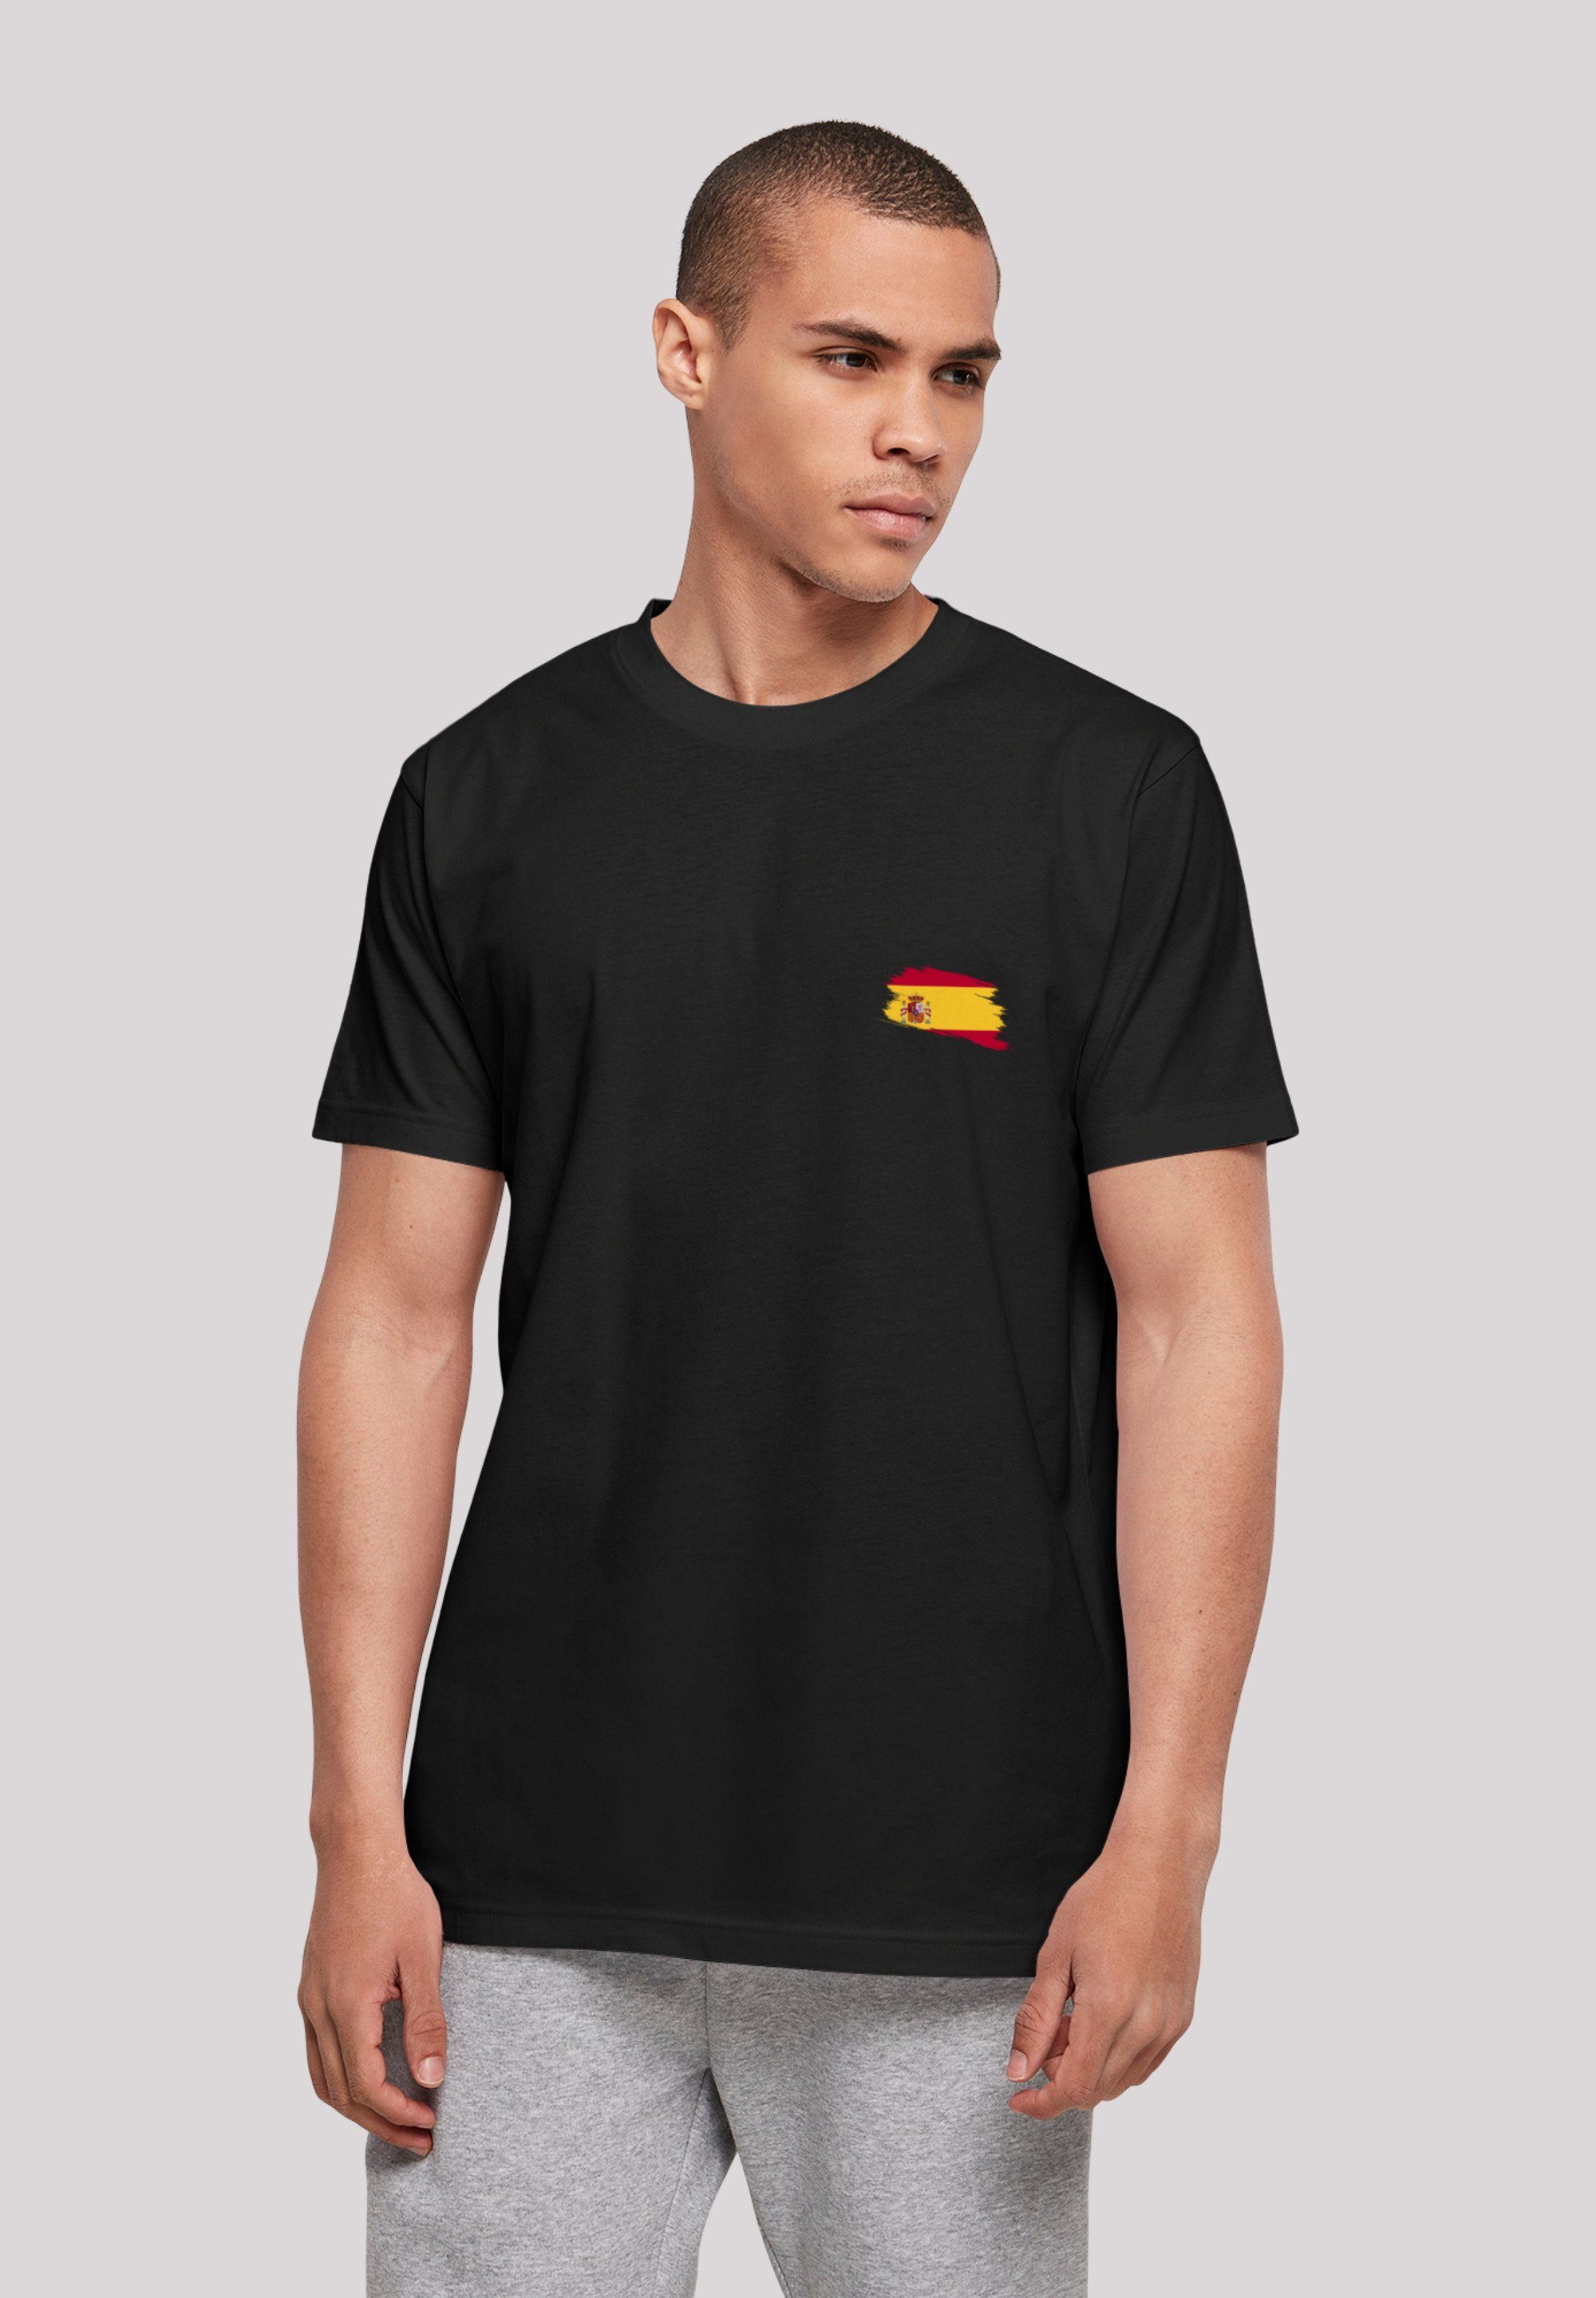 F4NT4STIC T-Shirt Spain Spanien Print Flagge schwarz